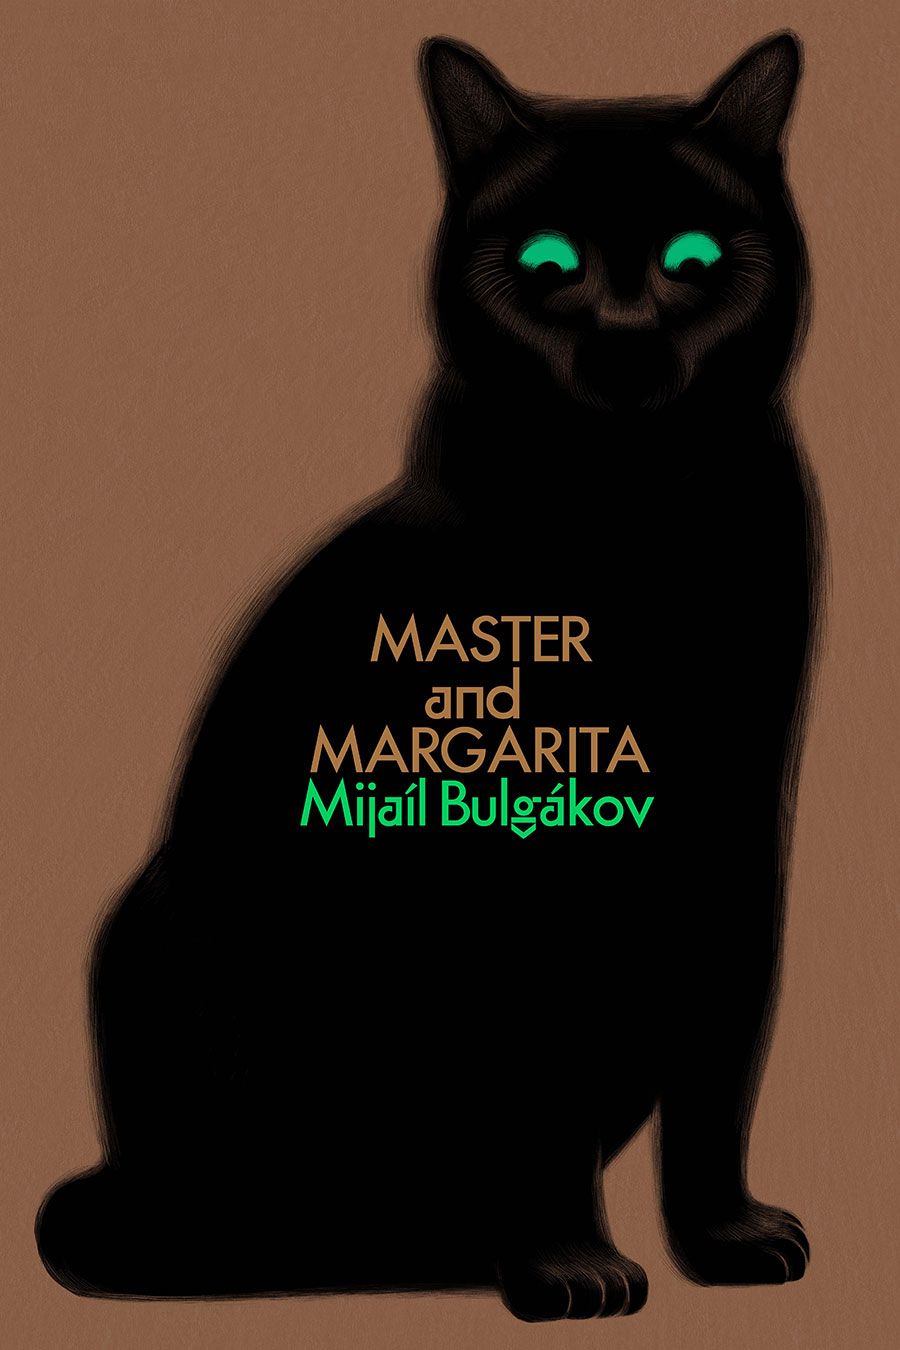 Master and Margarita by Mijaíl Bulgákov